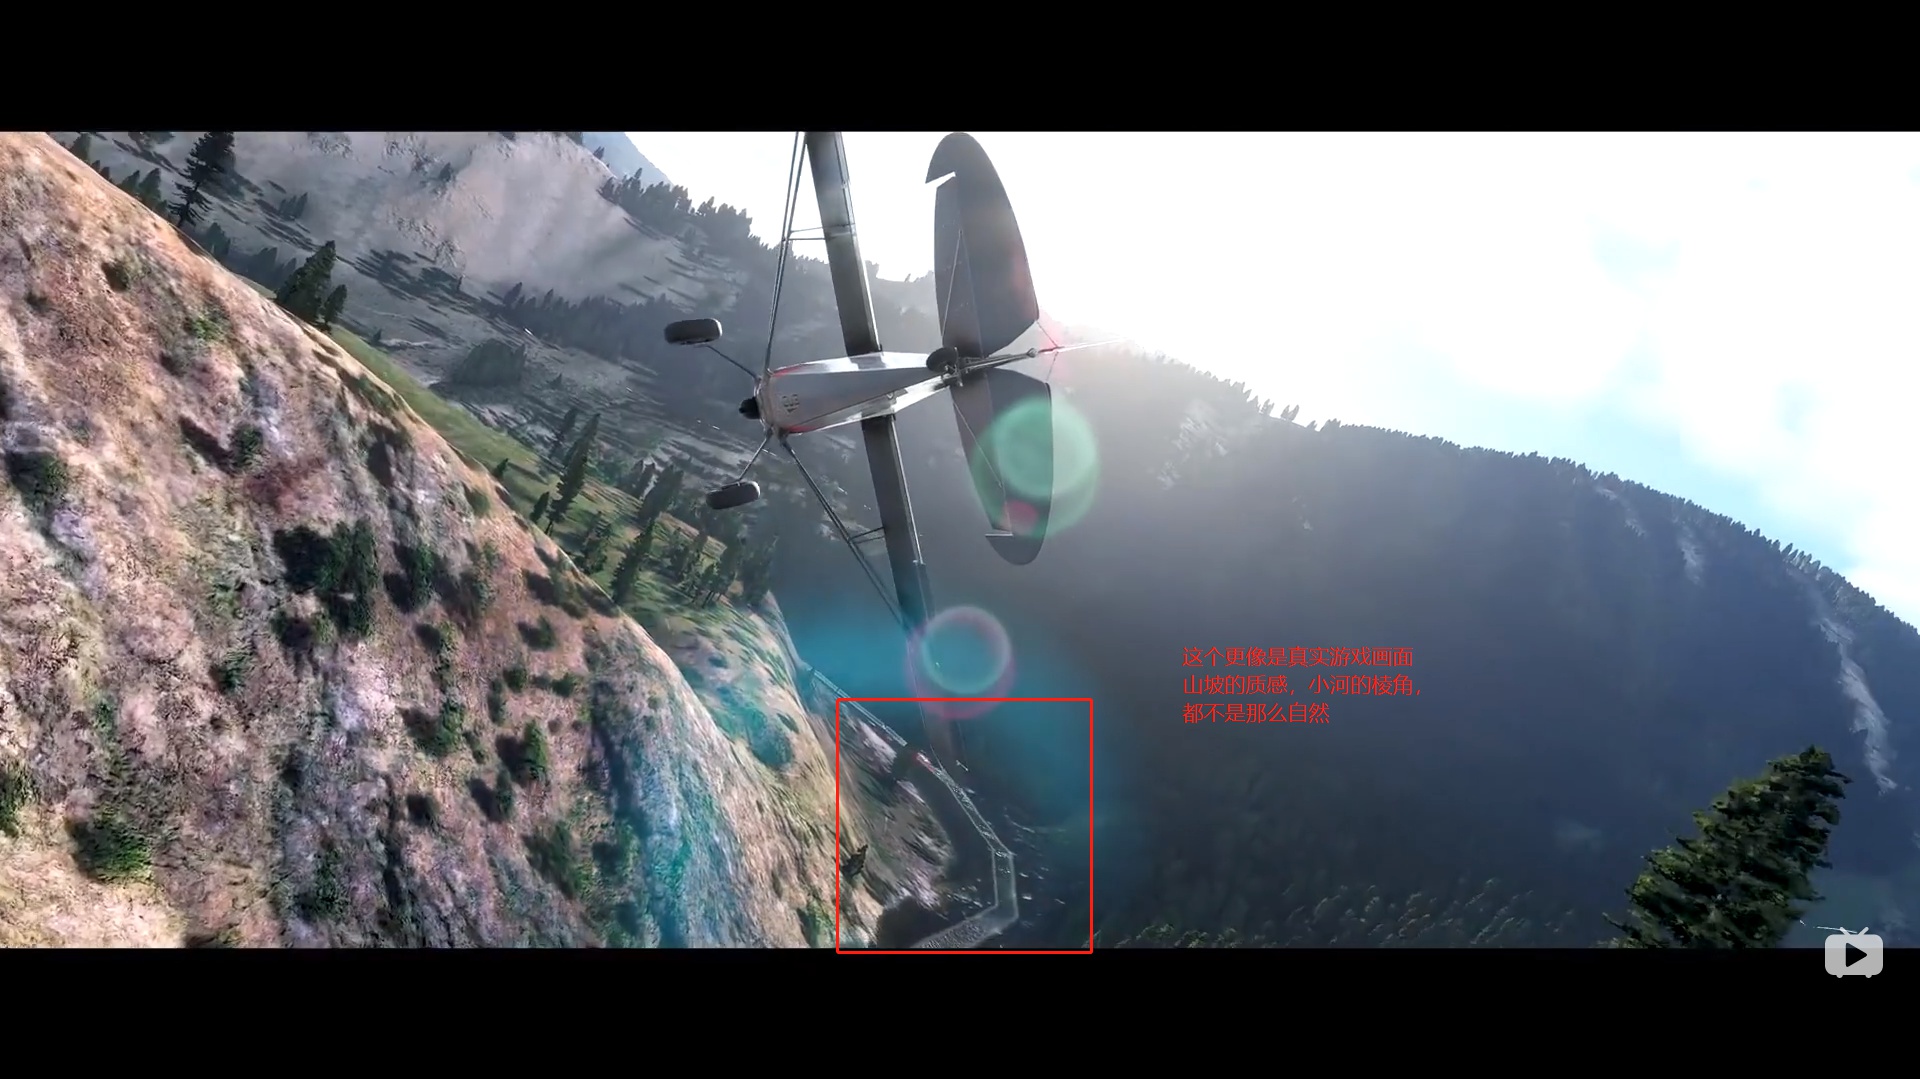 新版微软模拟飞行 预告Microsoft Flight Simulator - E3 2019 - Announce-9629 